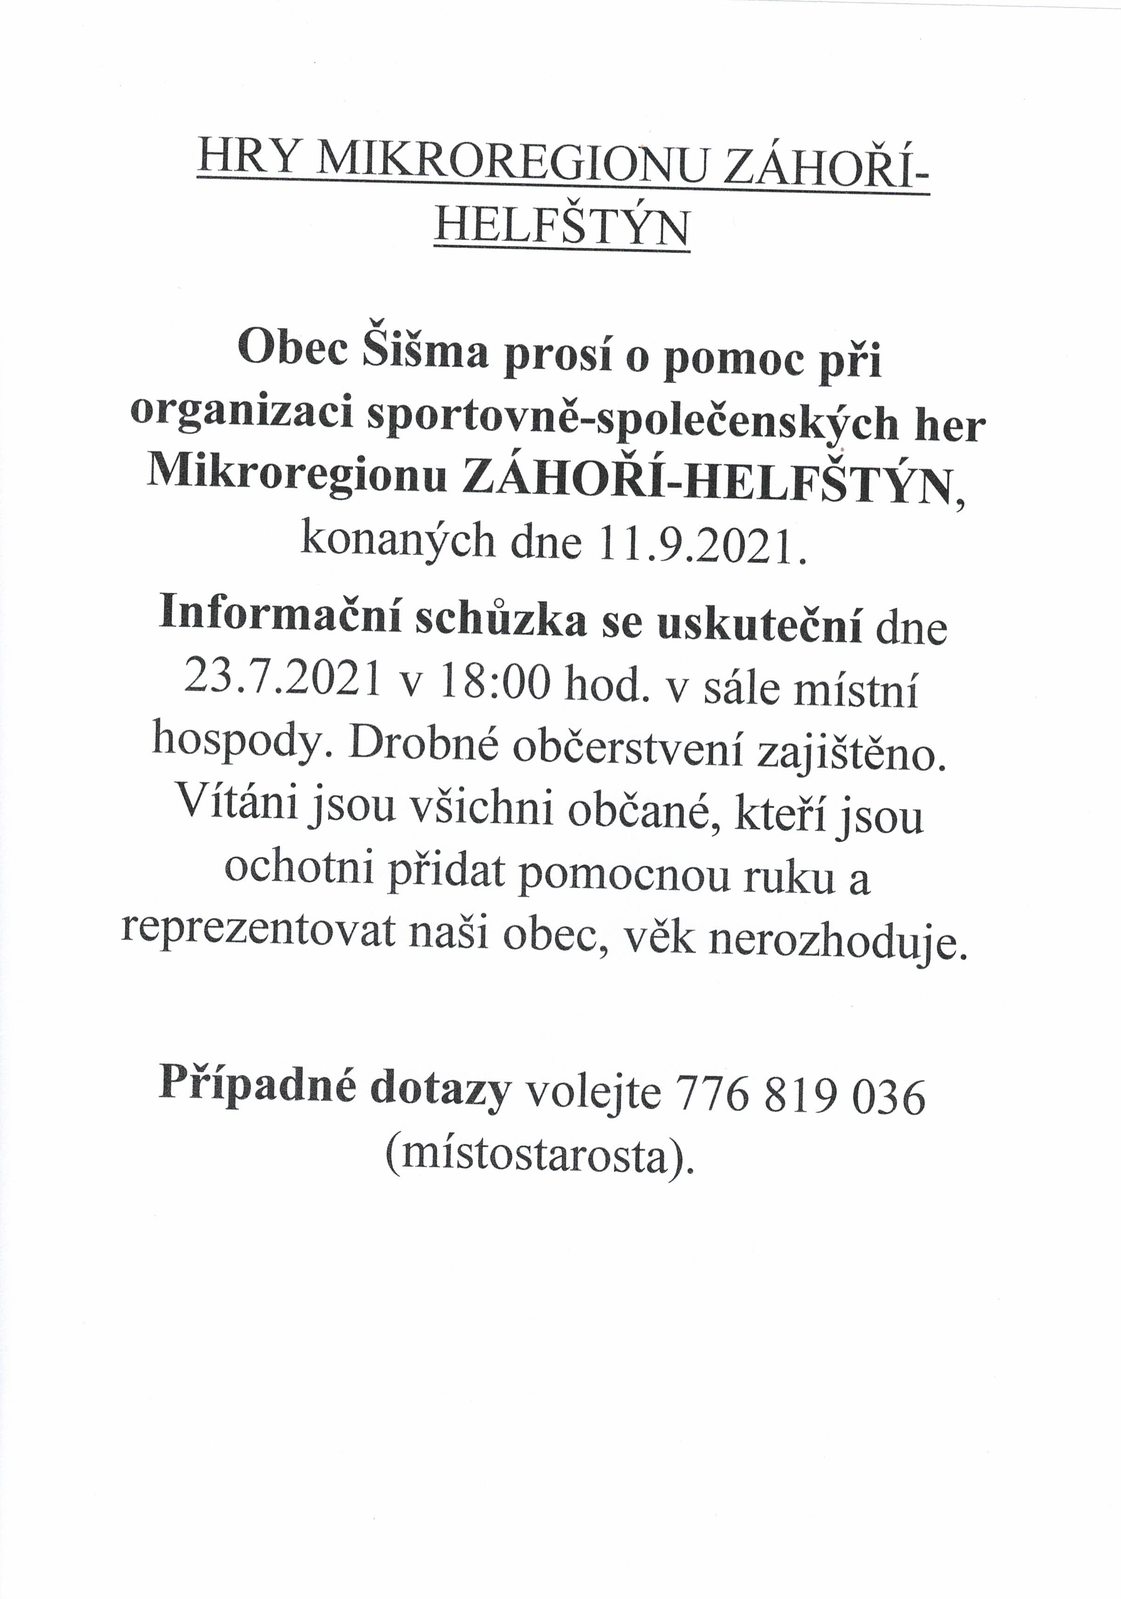 Hry Mikroregionu Záhoří-Helfštýn - prosba obce o pomoc při organizaci.jpg